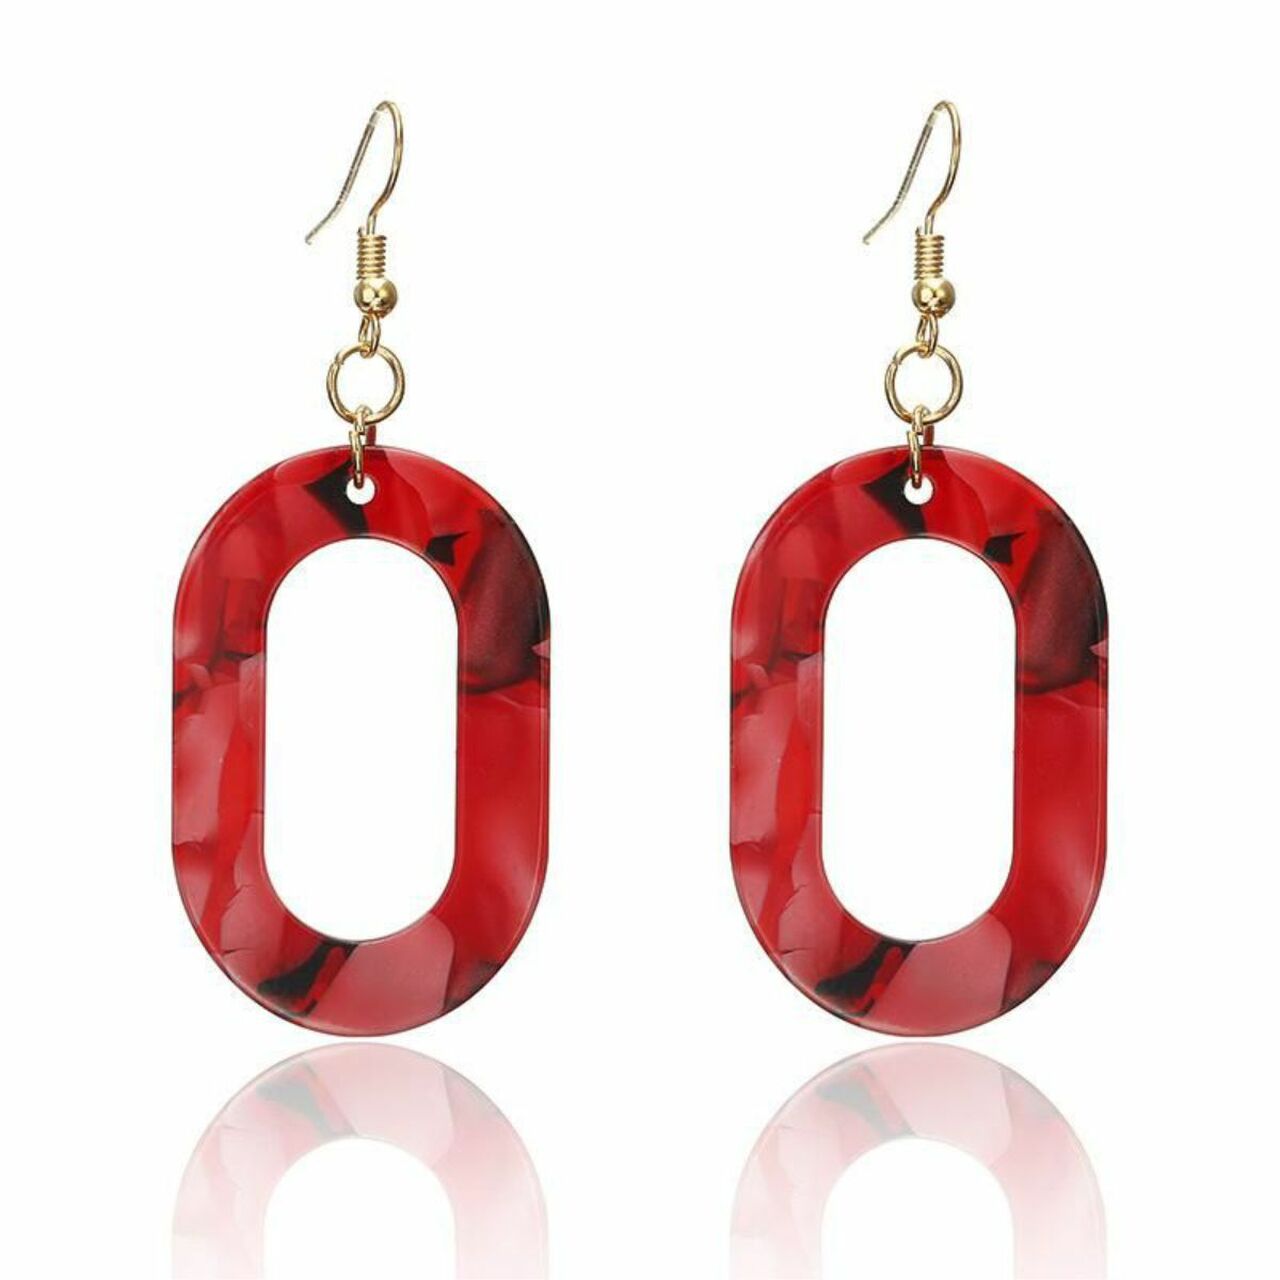 Red Oval "O" Earrings